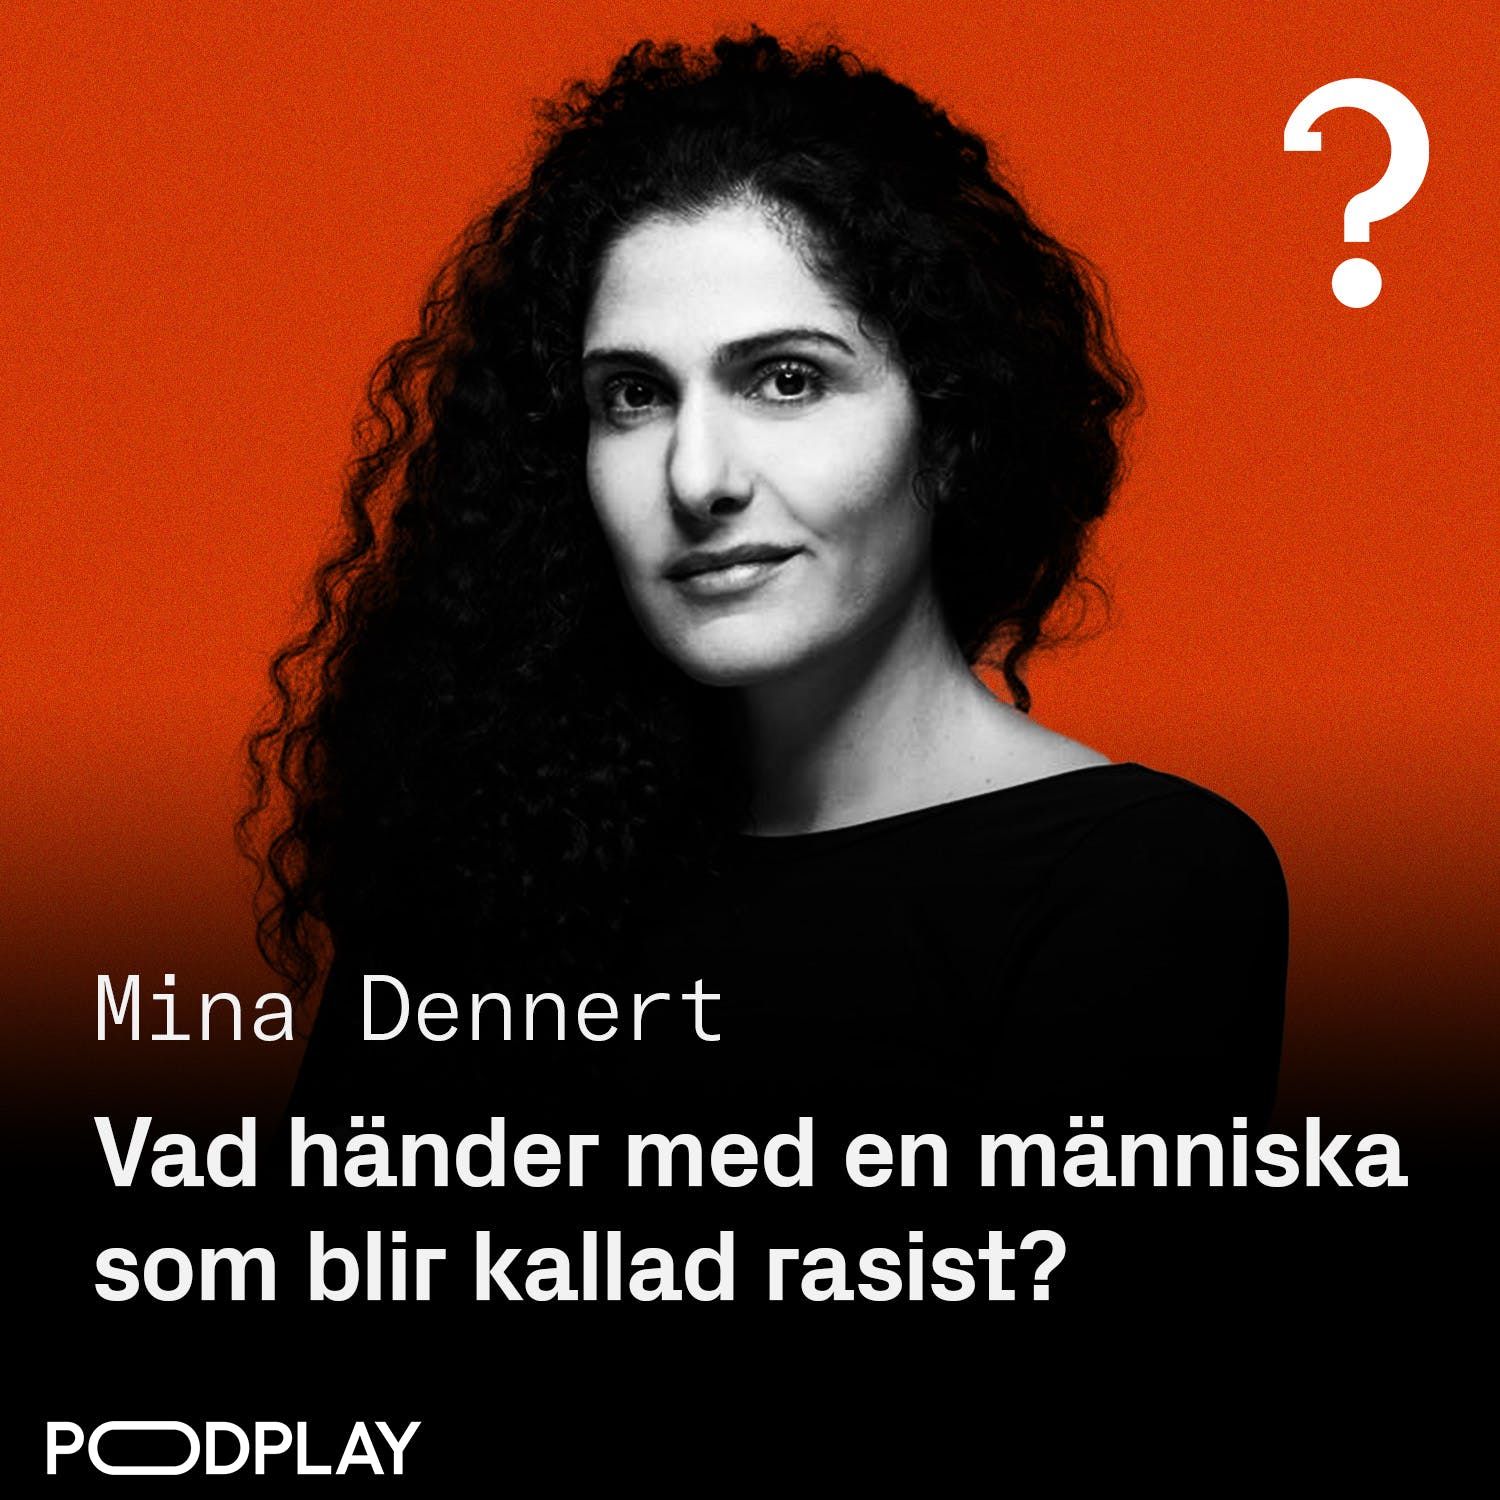 #219: Vad händer med en människa som blir kallad rasist? - Mina Dennert